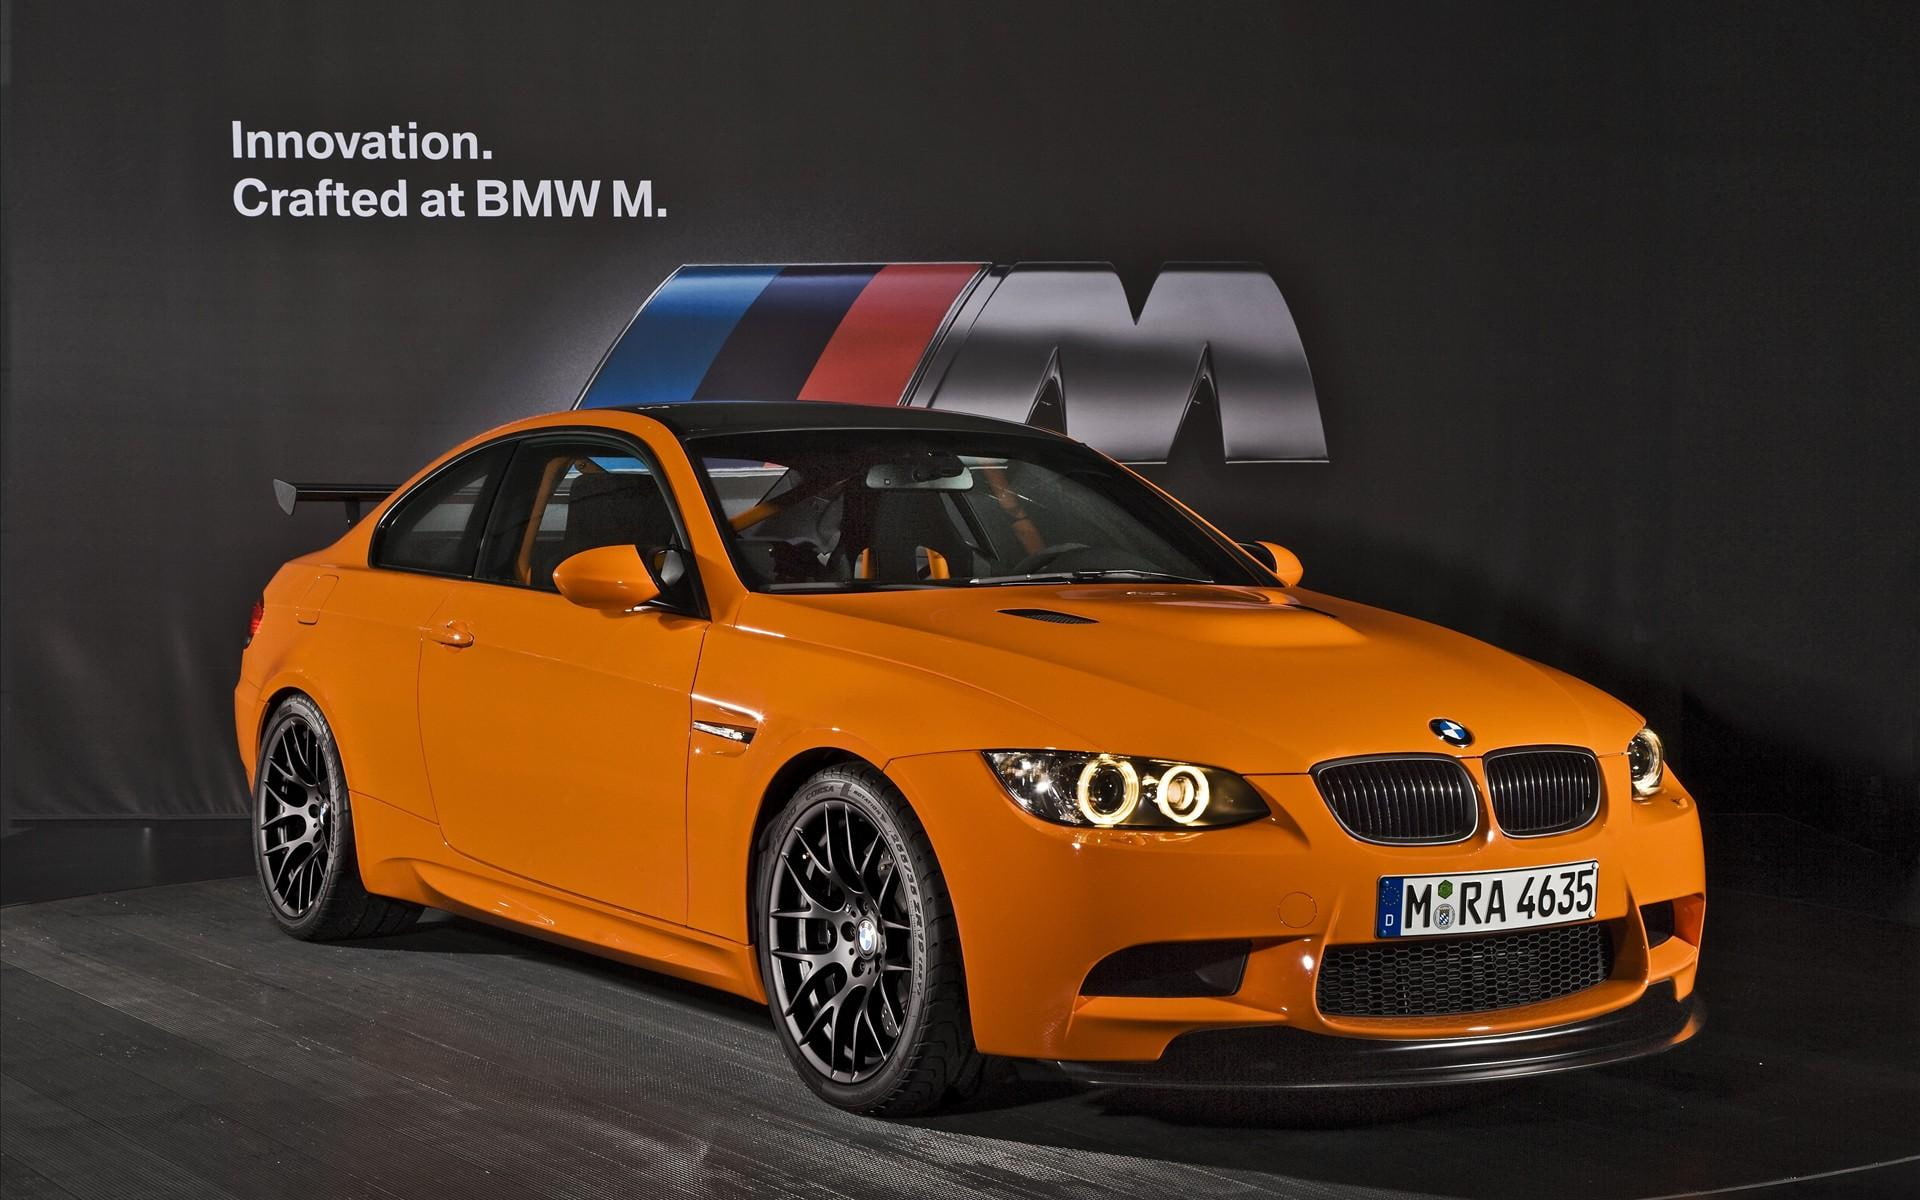 2011 BMW M3 GTS, orange bmw car